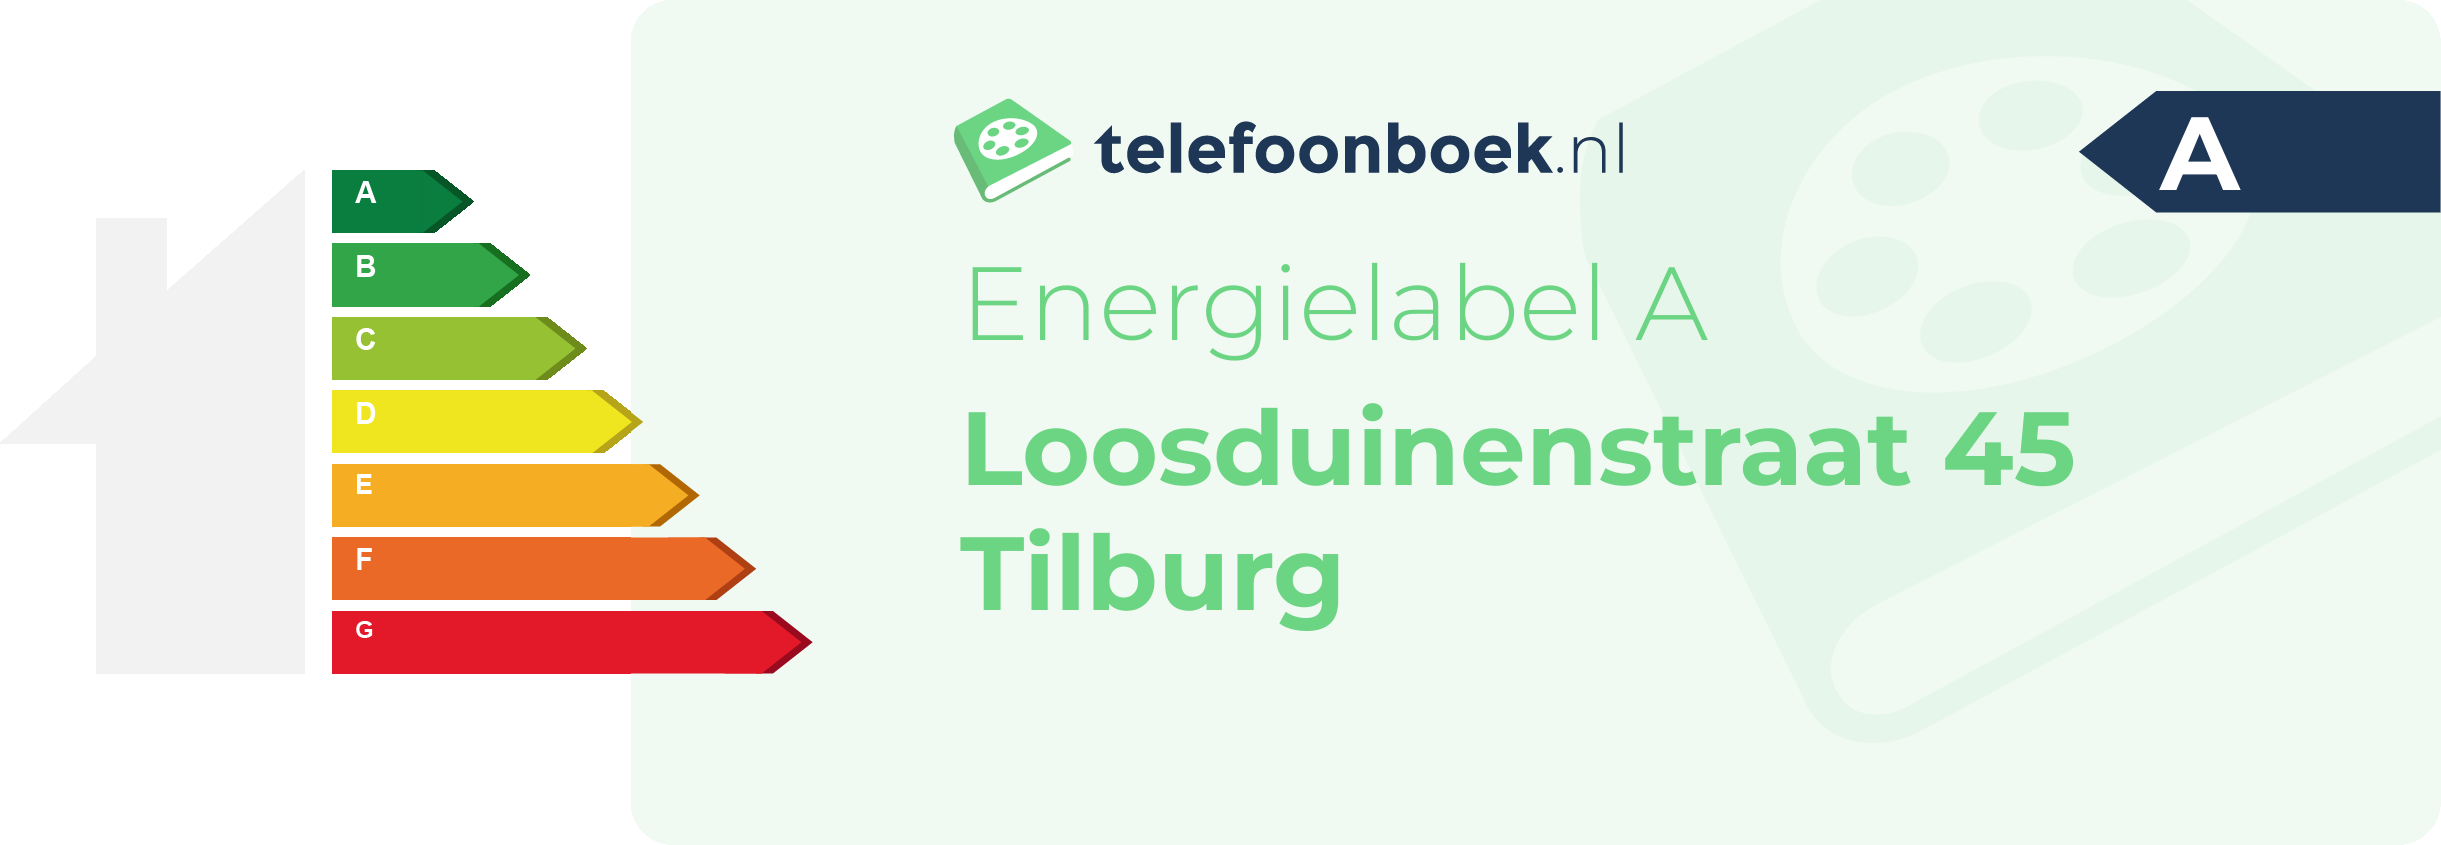 Energielabel Loosduinenstraat 45 Tilburg